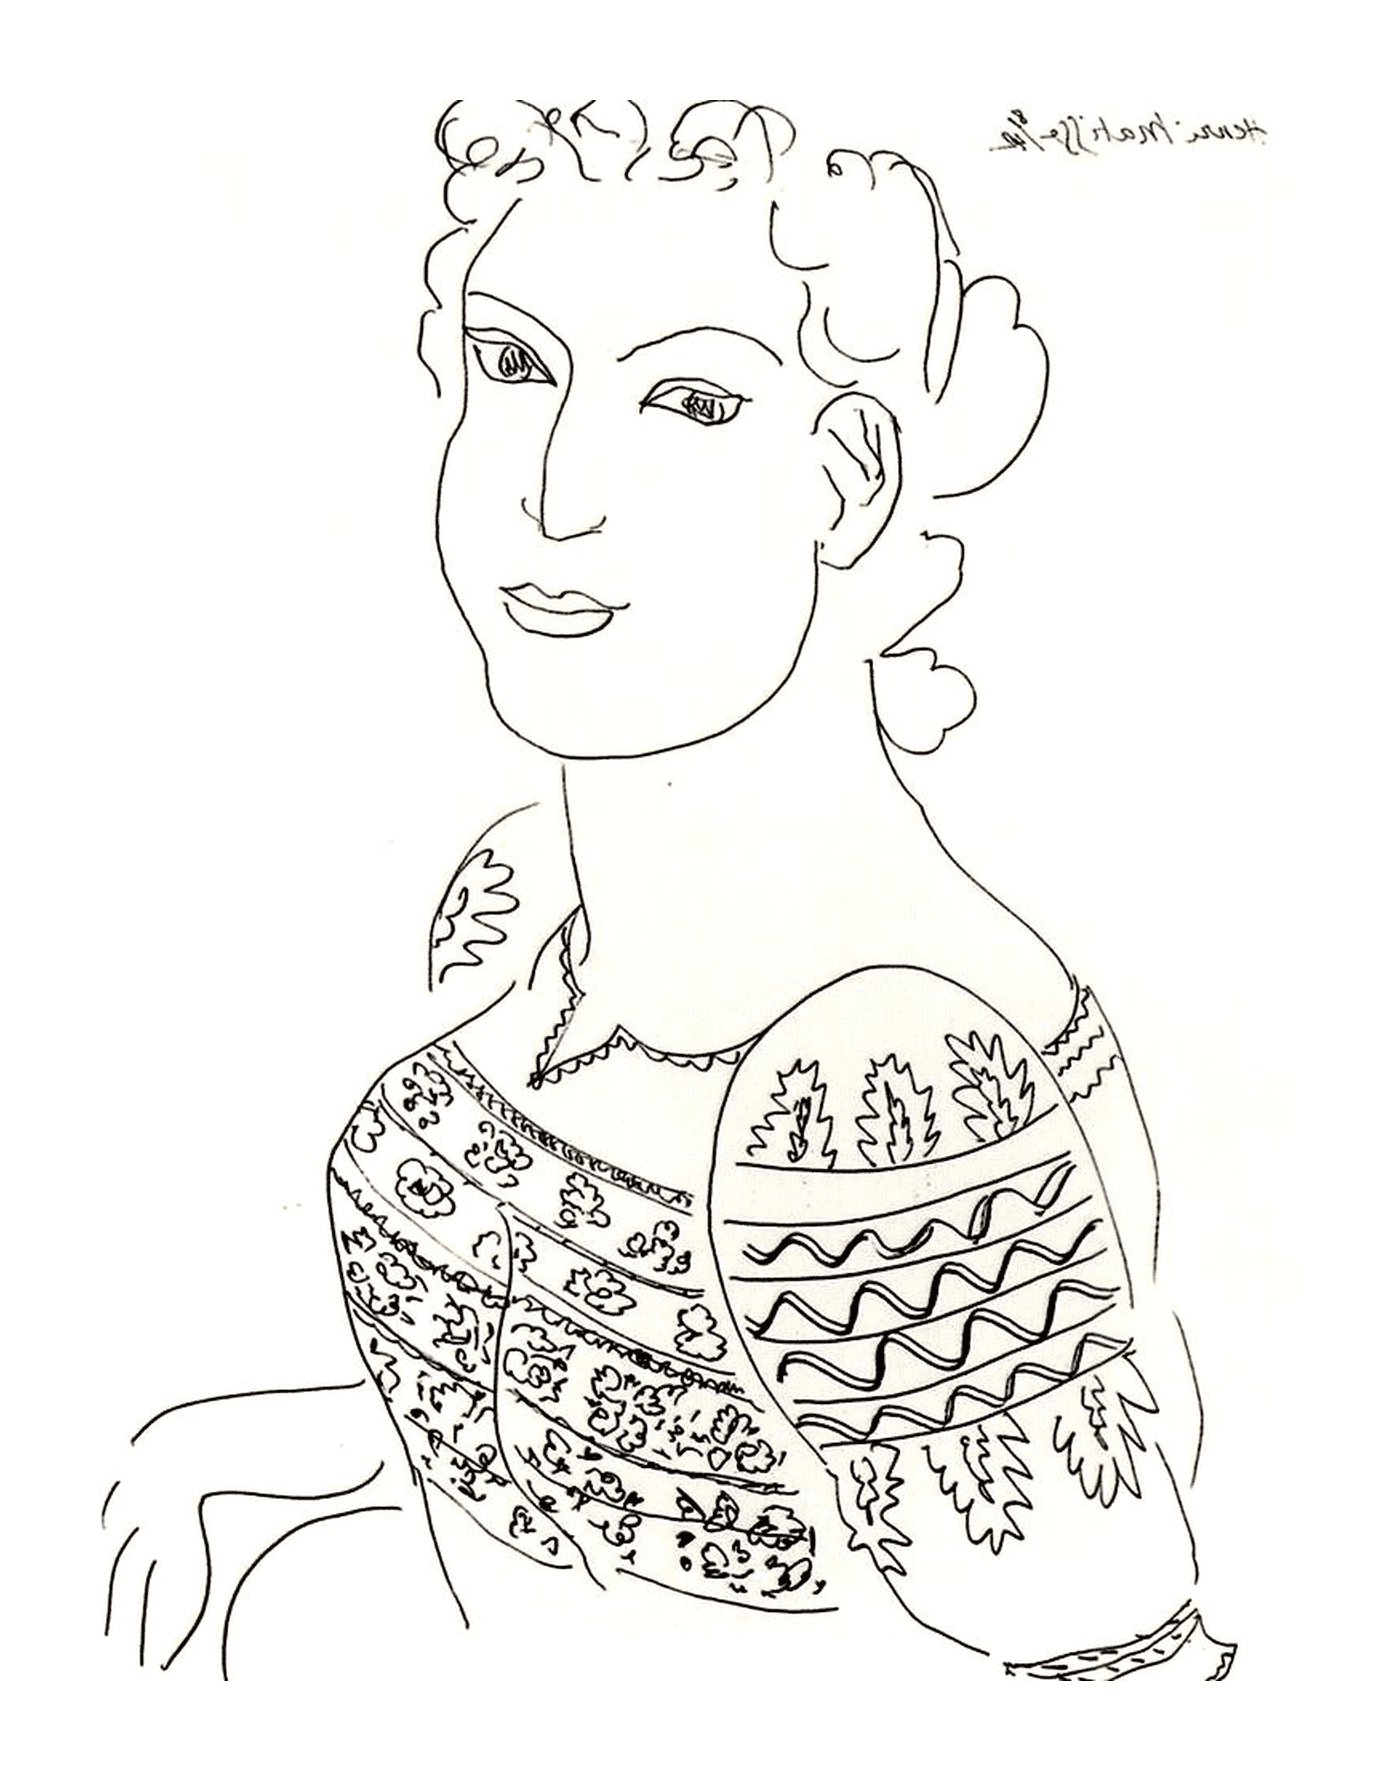  Женщина, одетая в свитер на румынской блузке, которую трудно опознать, возможно, работа Матисса 